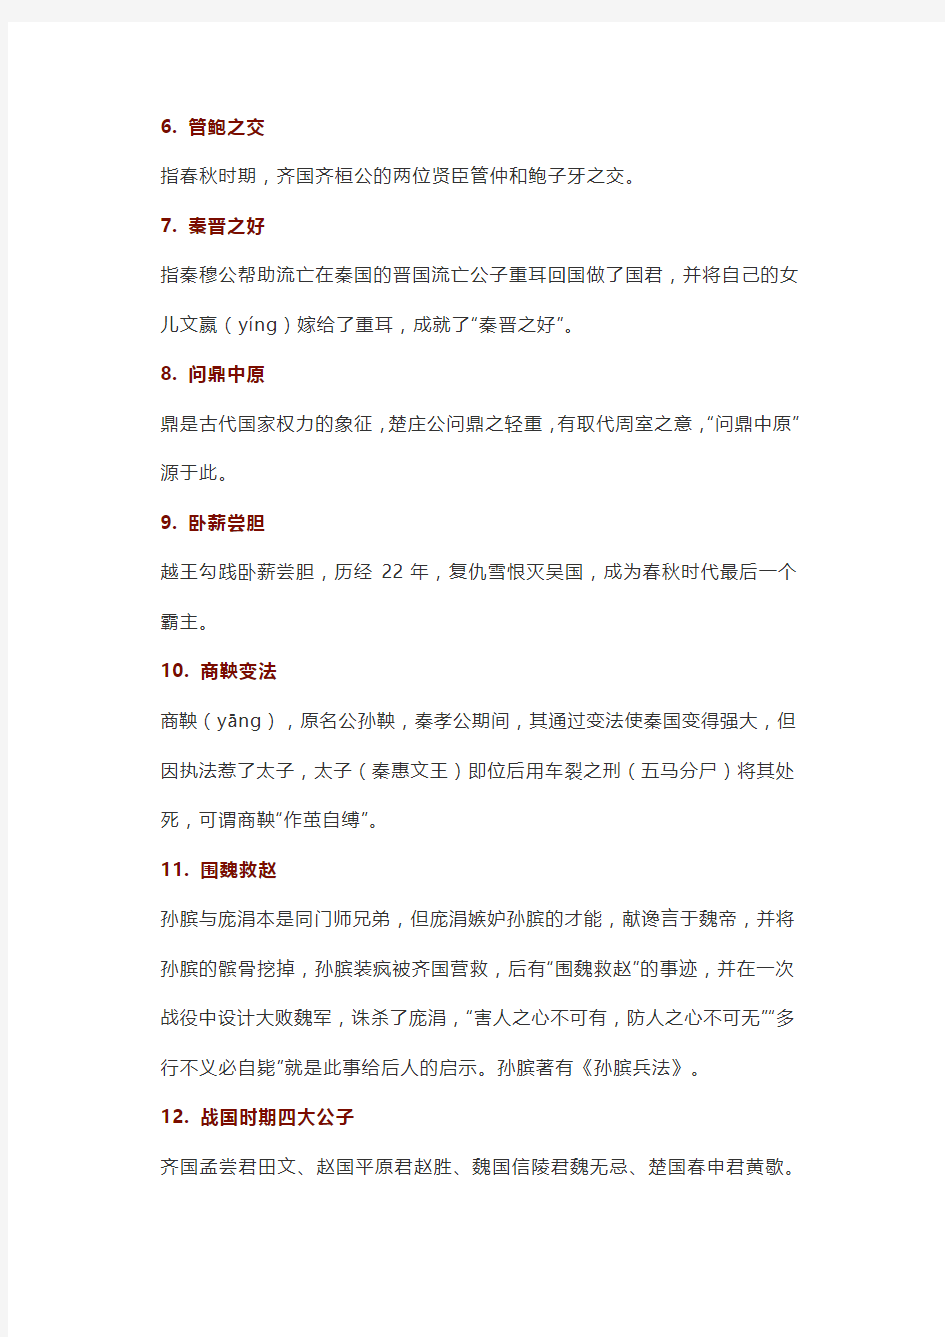 40个语文历史典故,让孩子读懂半部中国历史!